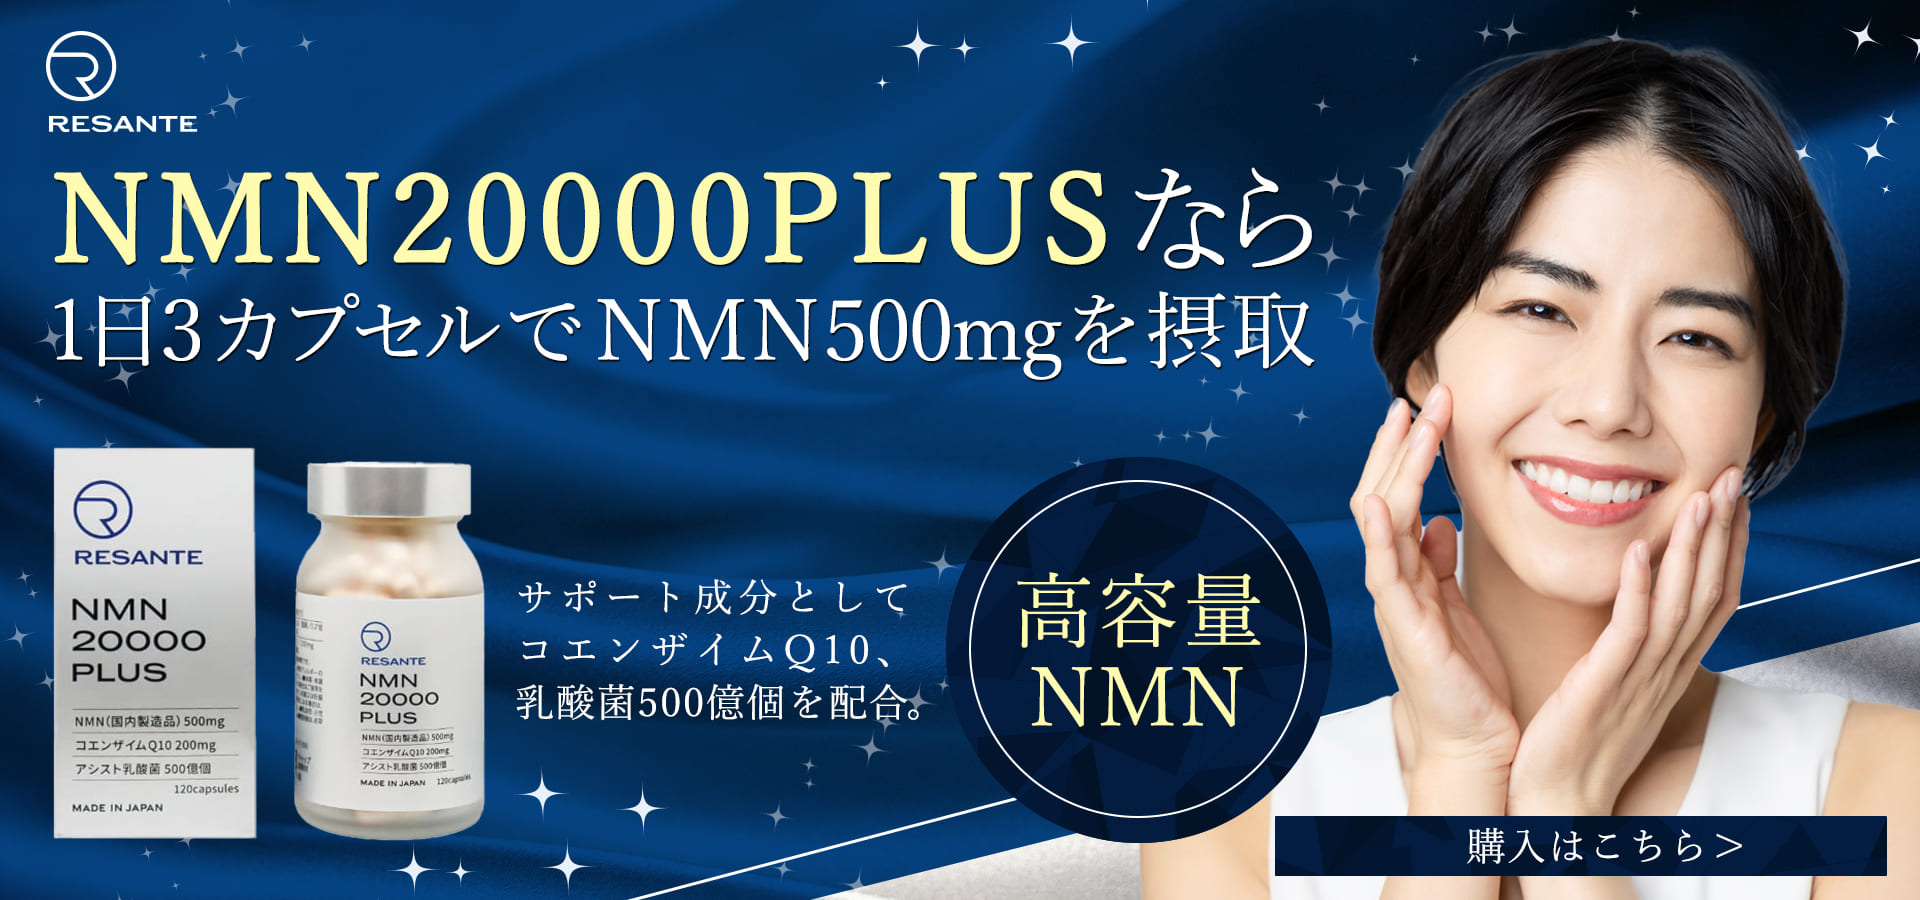 NMN20000PLUSなら1日3カプセルでNMN500mgを接種 サポート成分としてコエンザイムQ10、乳酸菌500億個を配合